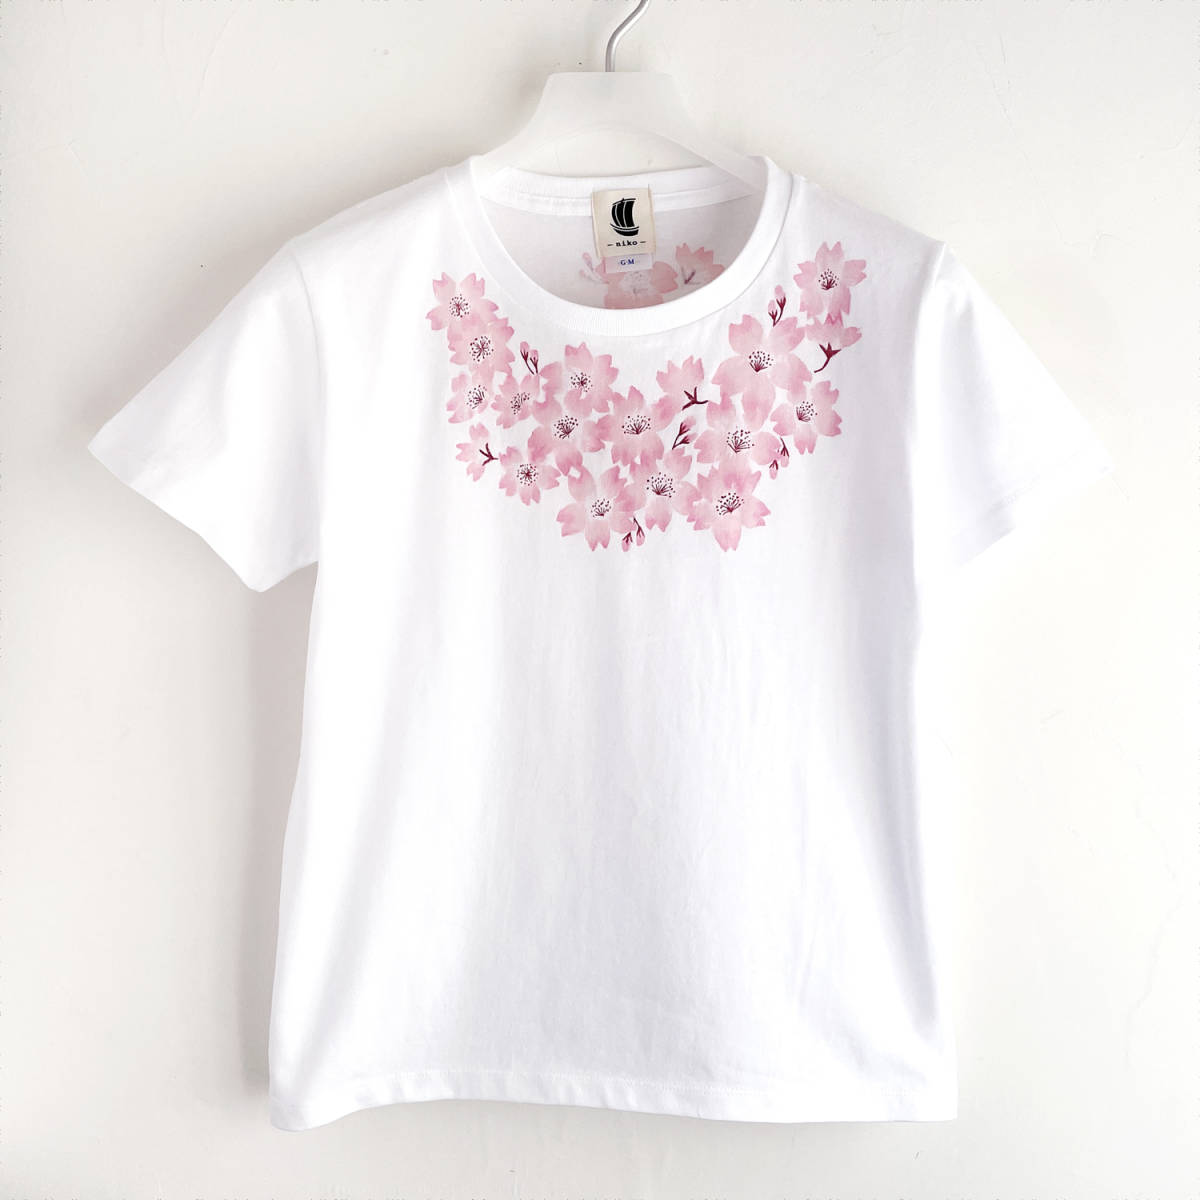 Camiseta de mujer, talla l, blanco, camiseta con estampado de flores de cerezo y ramillete, camiseta pintada a mano, talla l, cuello redondo, estampado